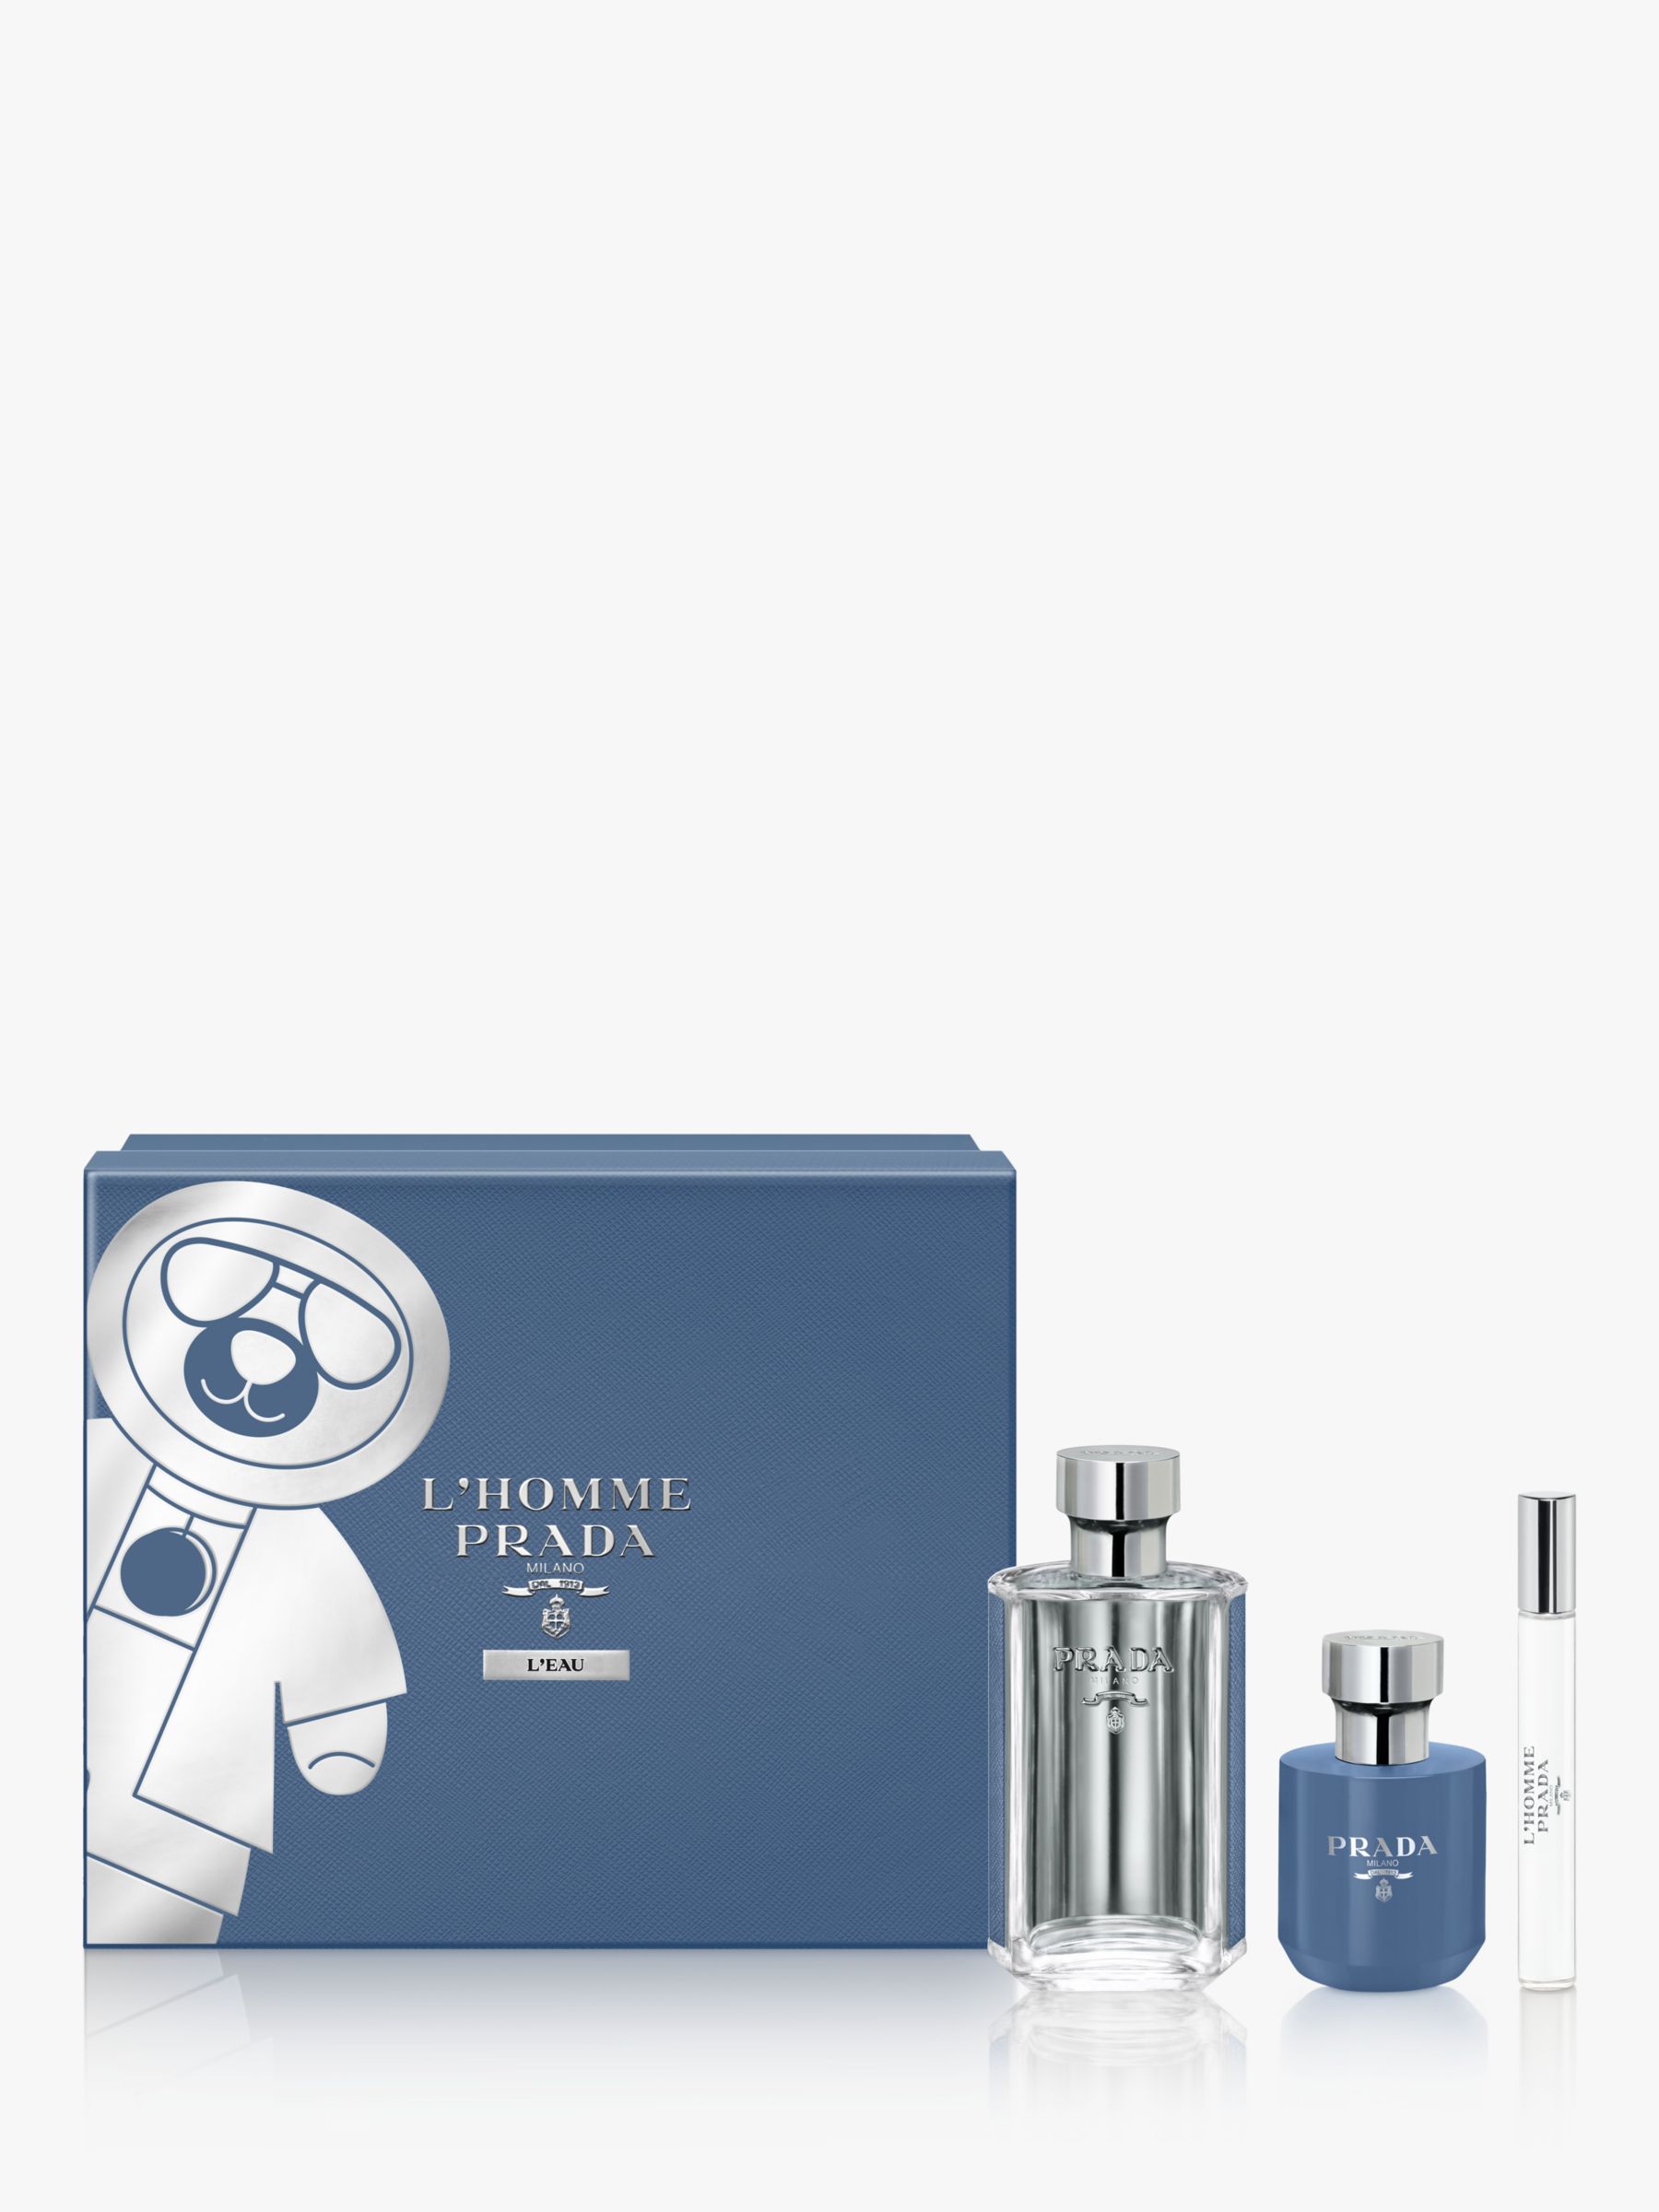 Prada L'Homme L'Eau 100ml Eau de Toilette Fragrance Gift Set